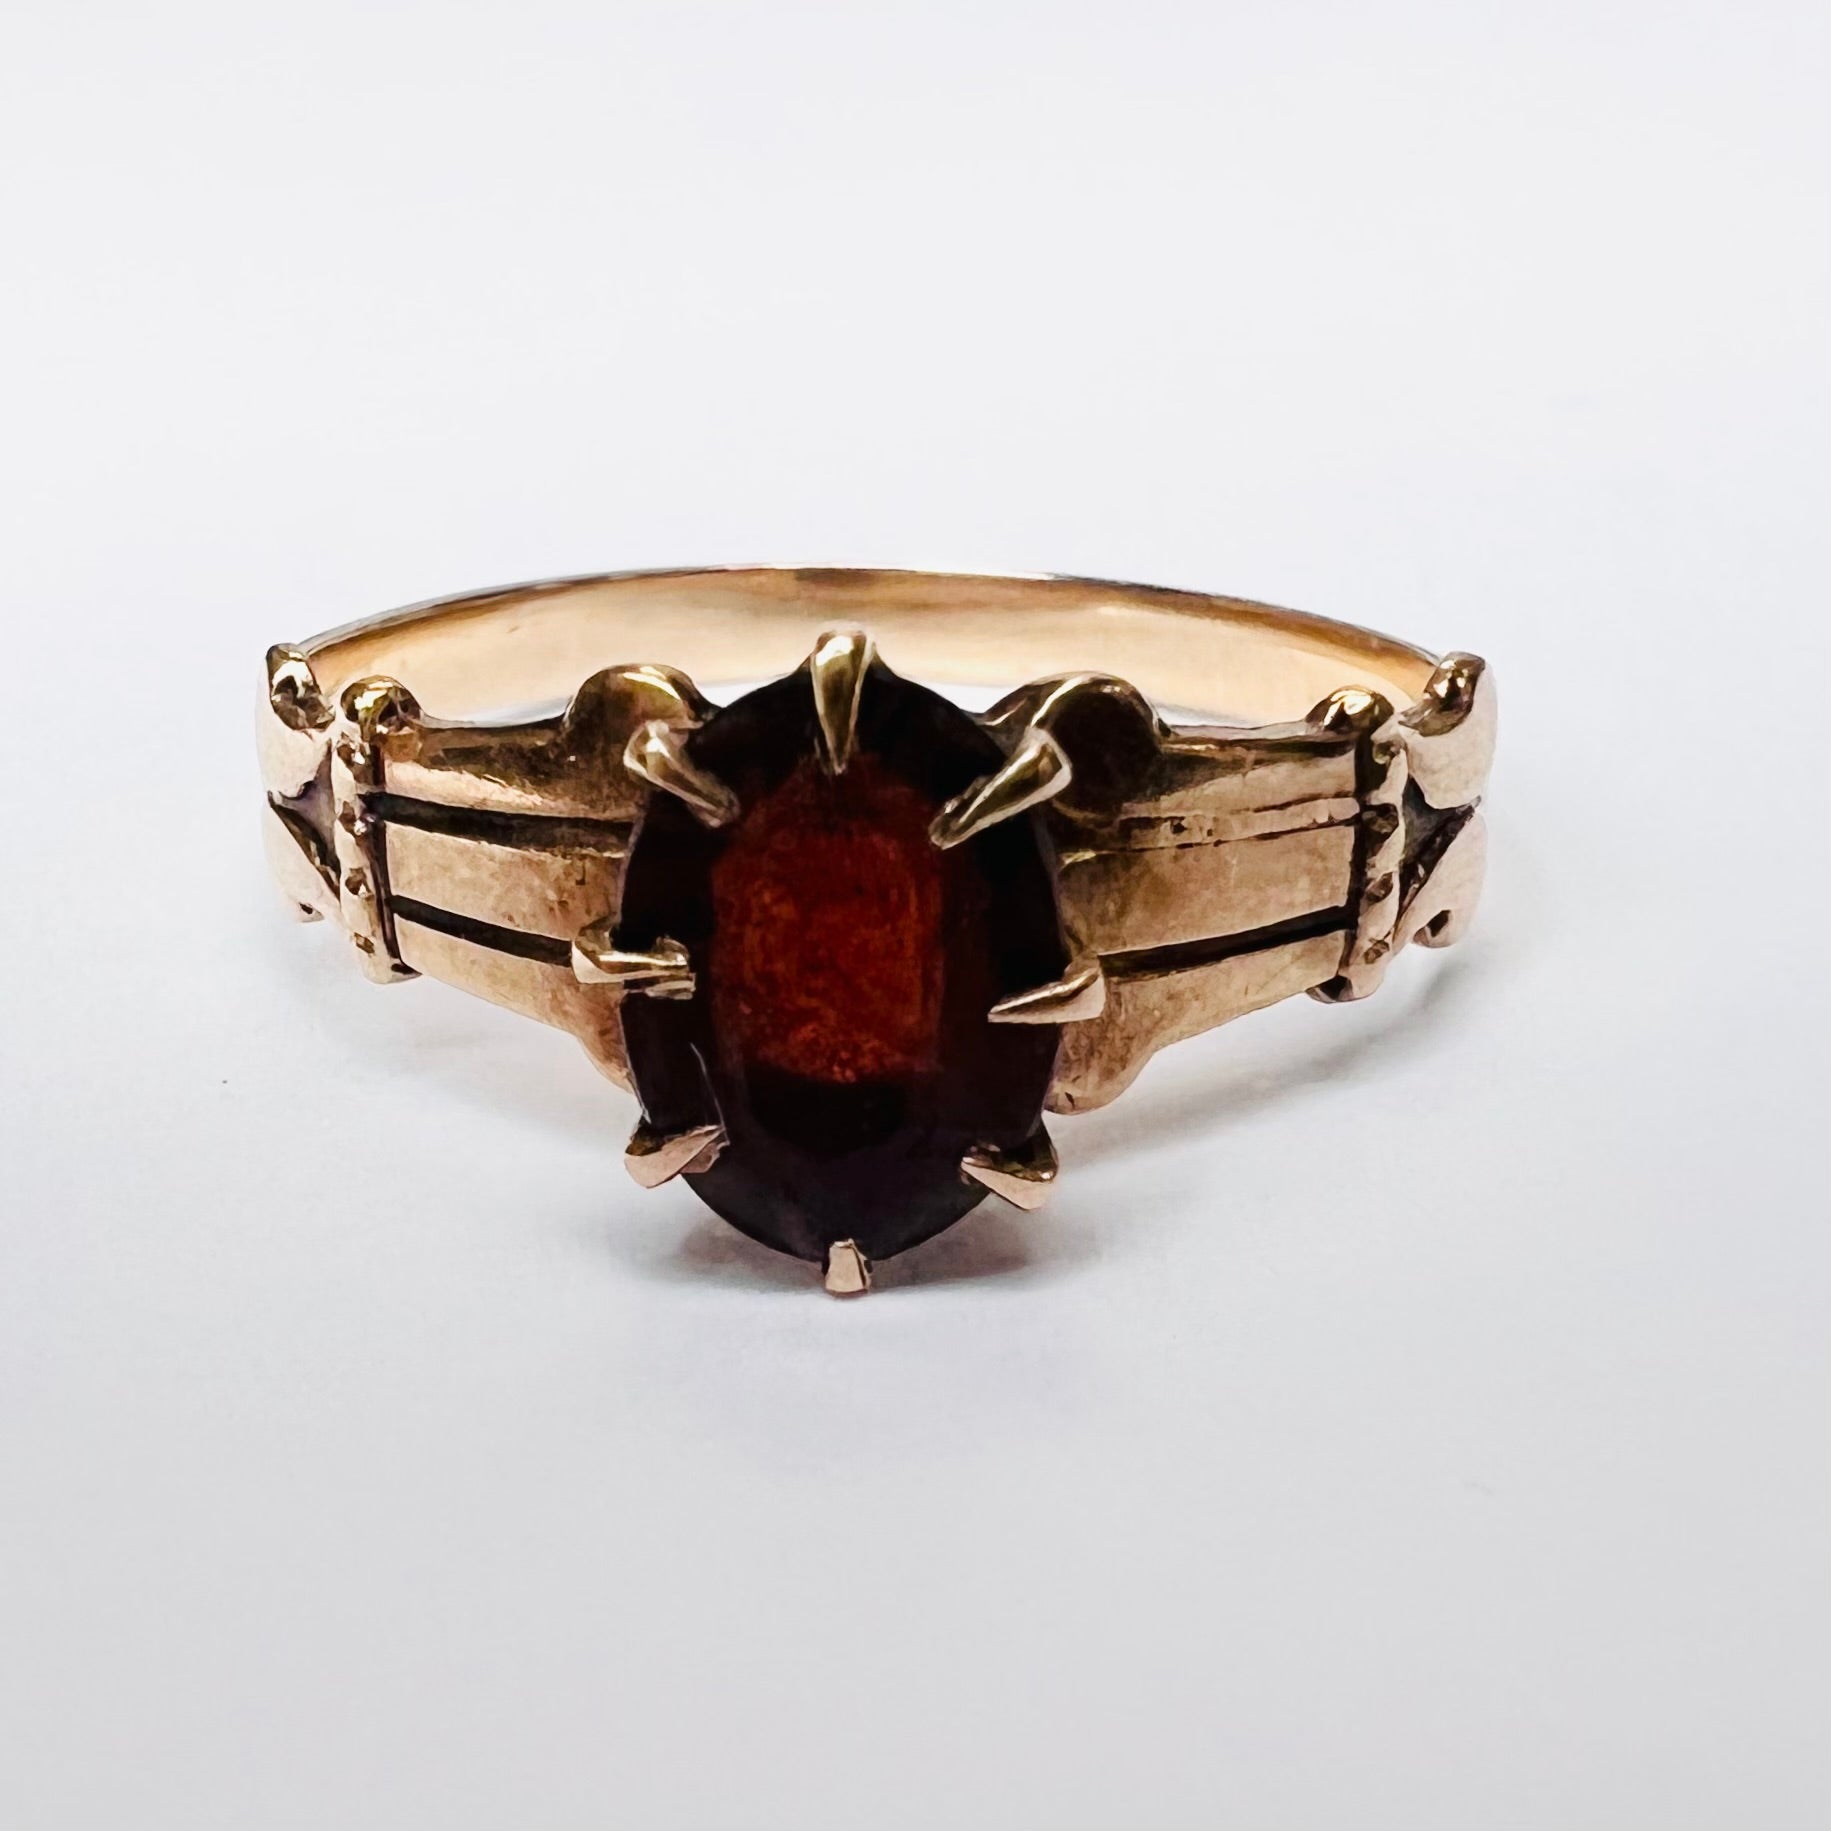 Antique 14K Rose Gold Oval Garnet Engraved Band Ring Size 6.25